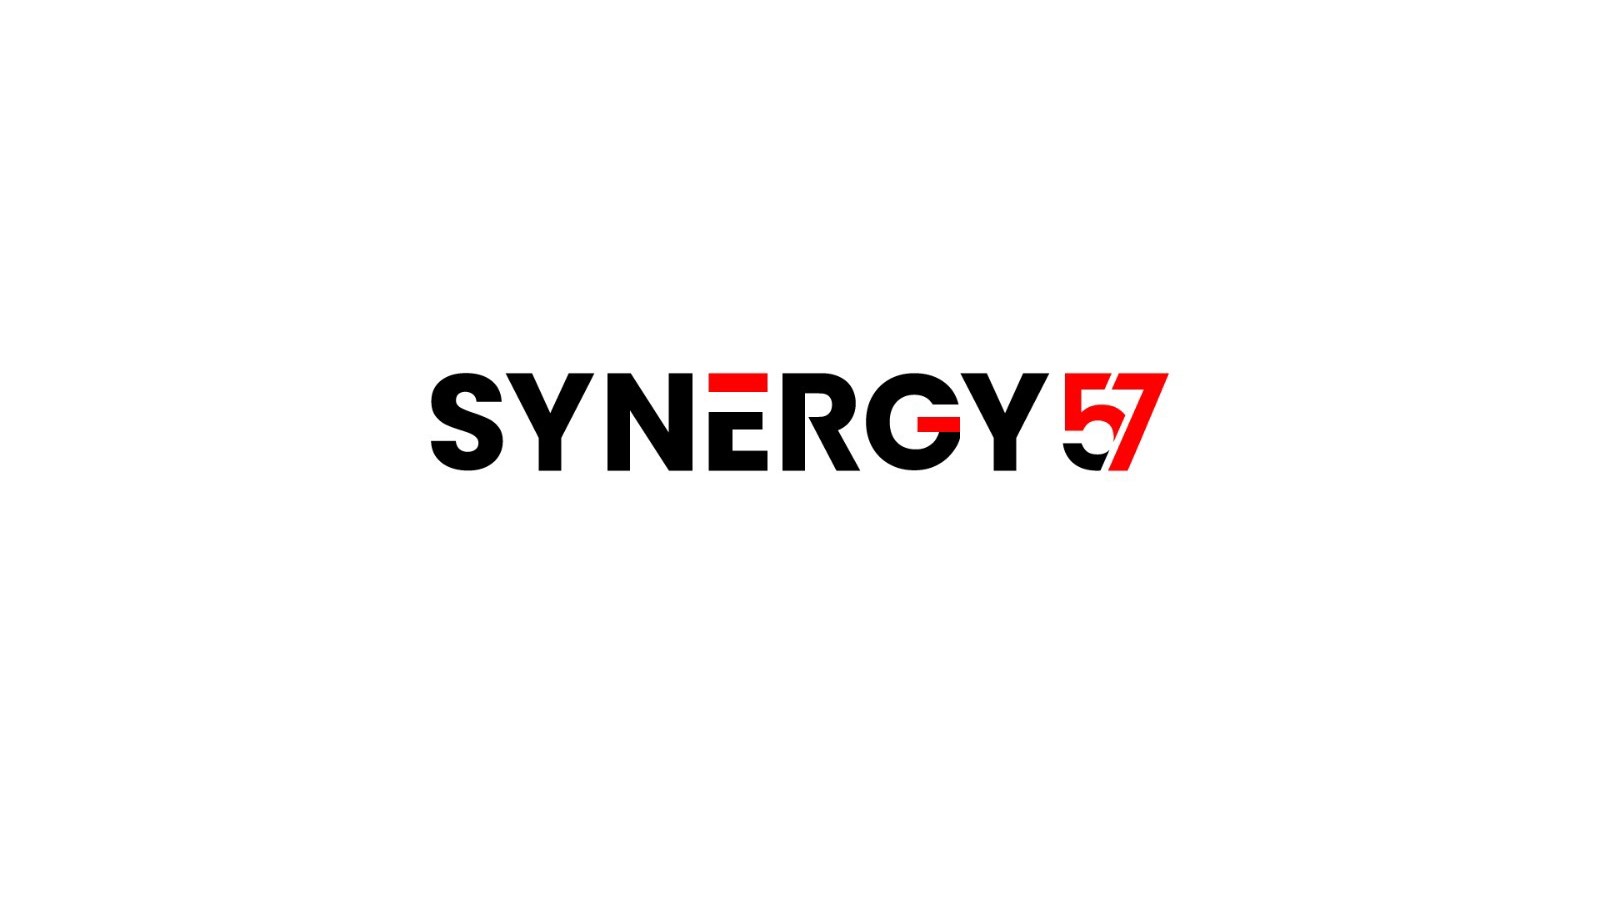 Synergy 57